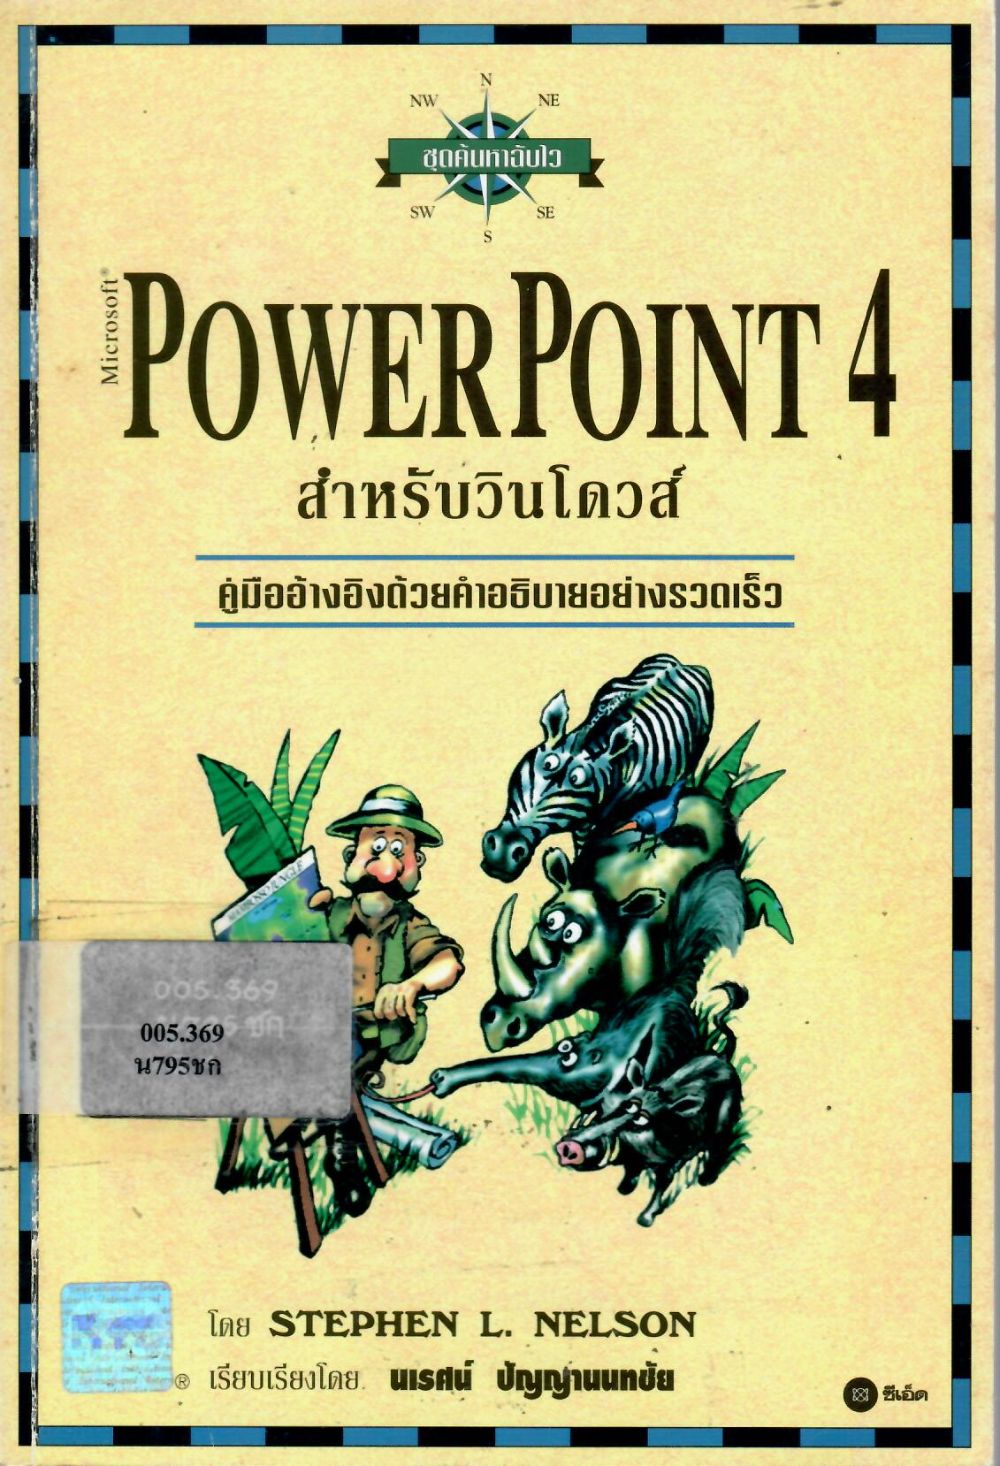 ชุดค้นหาฉับไว Microsoft PowerPoint 4 สำหรับวินโวส์/ สตีเฟ่น เนลสัน แอล, ผู้เขียน ; นเรศน์ ปัญญานนทชัย, ผู้เรียบเรียง